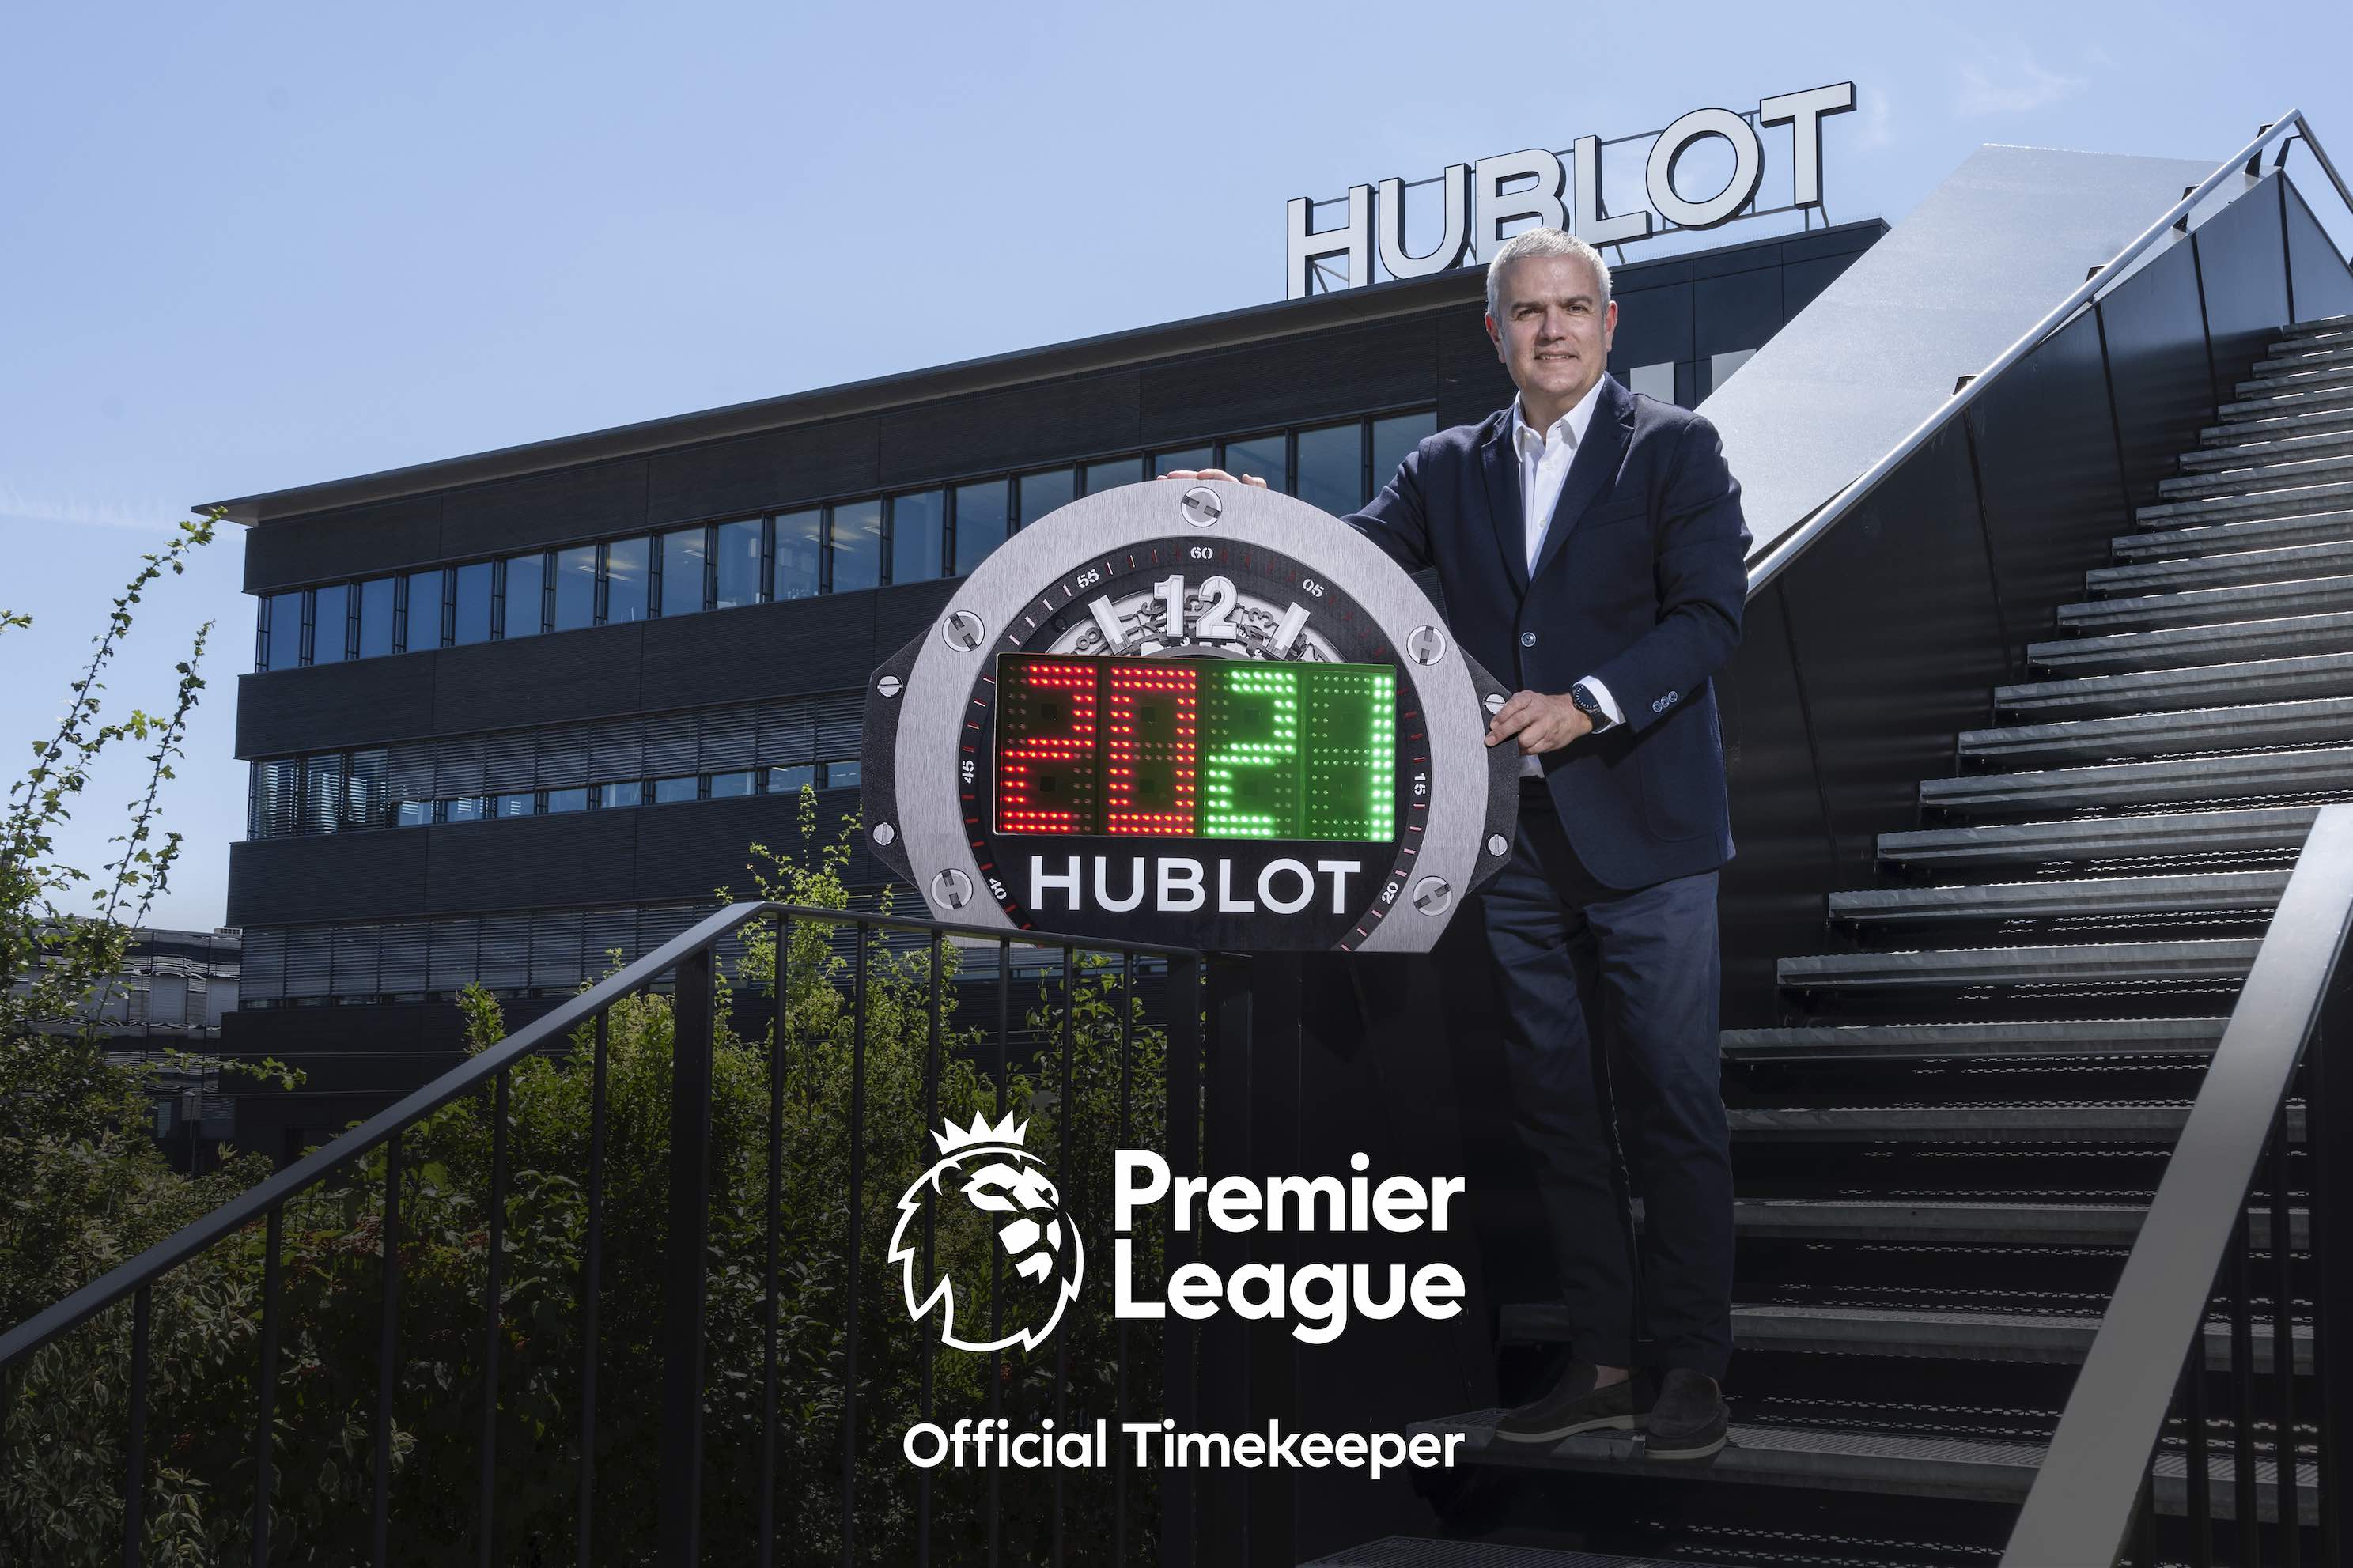 Premier League công bố Hublot là thương hiệu đồng hồ bảo trợ thời gian chính thức của Premier League 2020-21